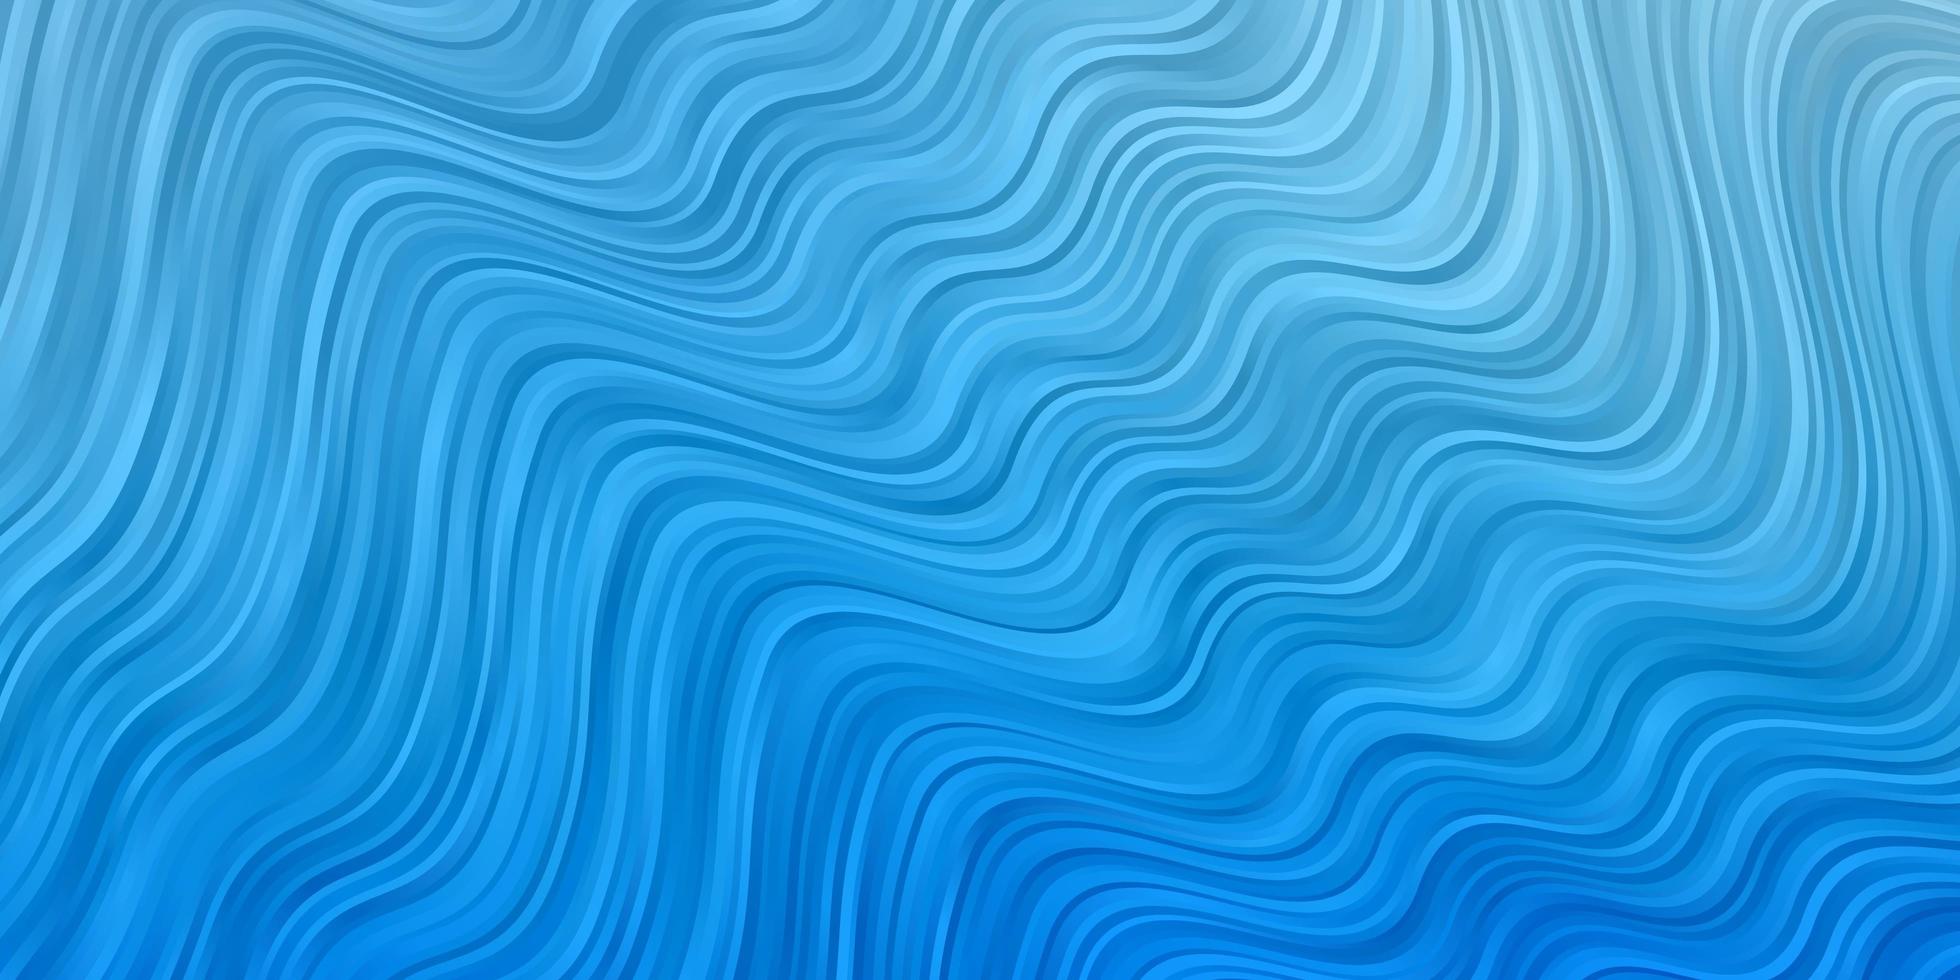 hellblauer Hintergrund mit schiefen Linien. vektor